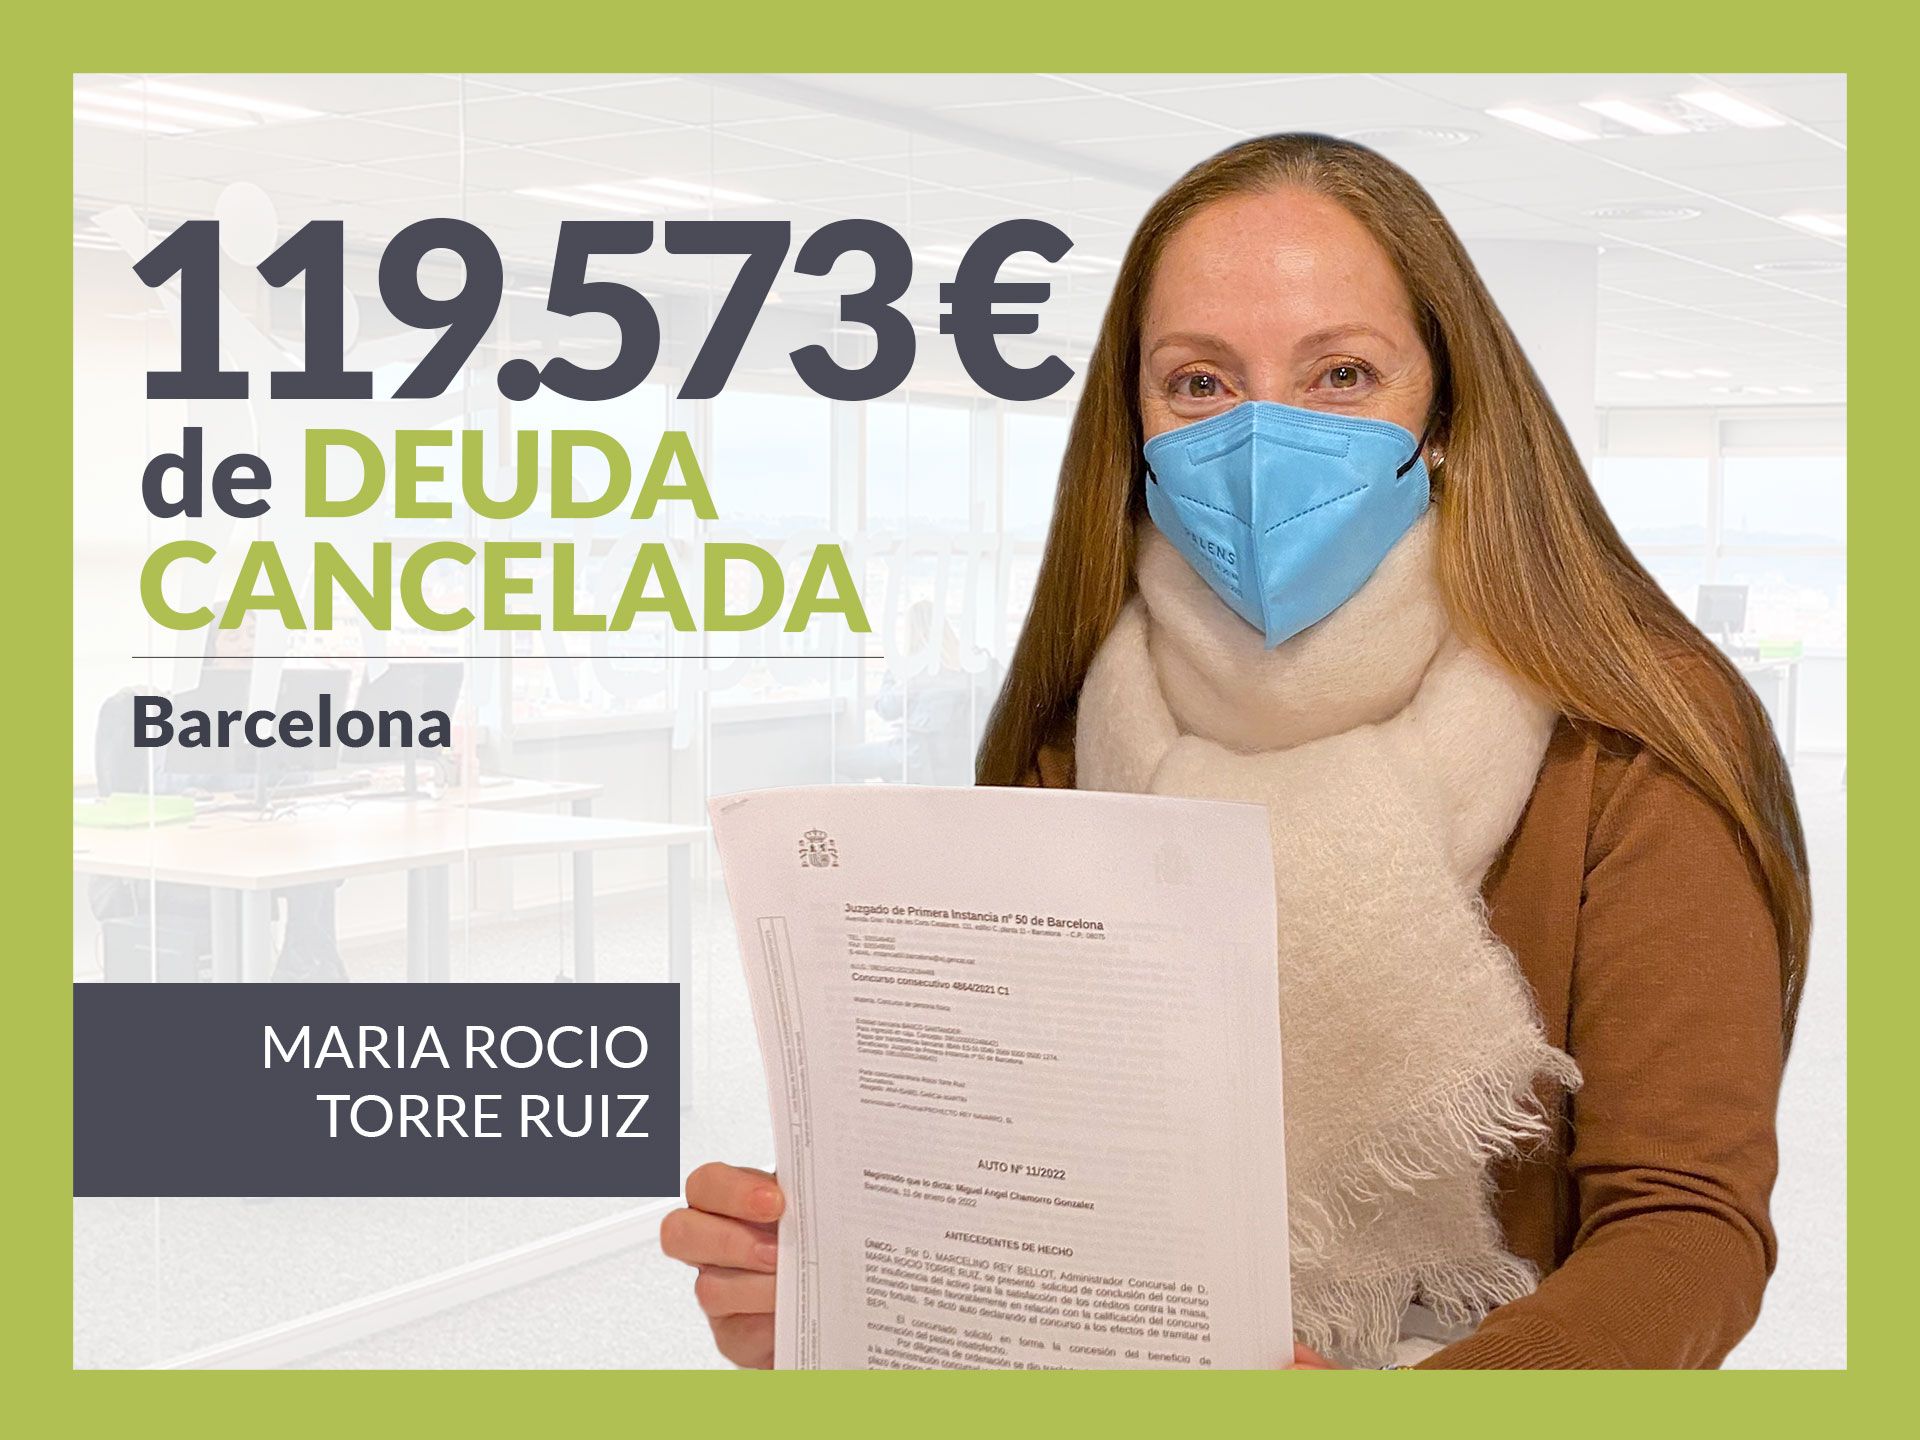 Repara tu Deuda Abogados cancela 119.573? en Barcelona (Catalunya) con la Ley de Segunda Oportunidad